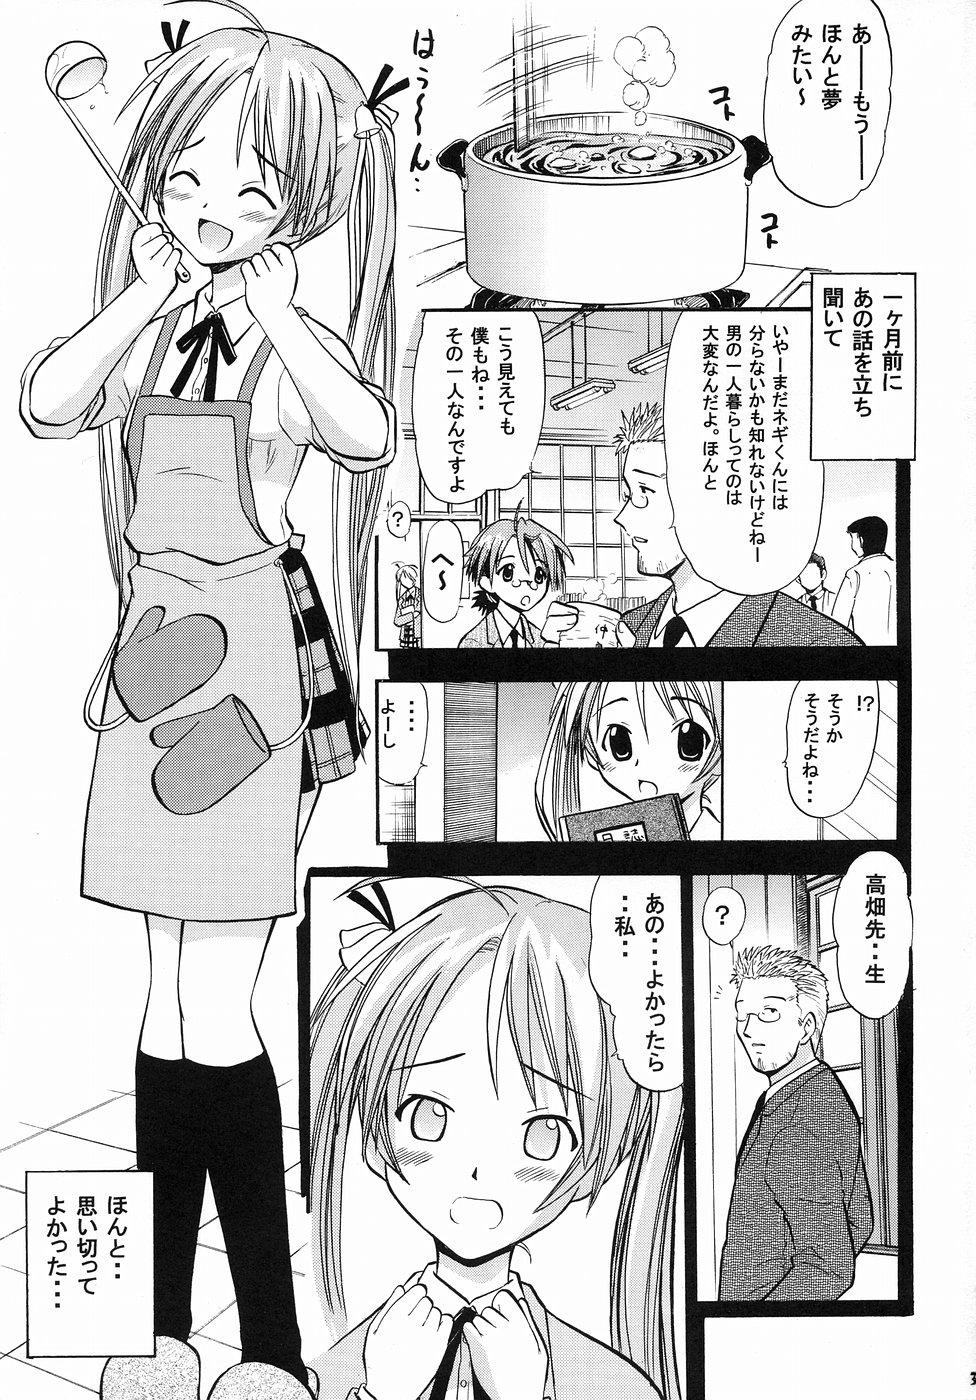 Face Fuck Asuna no Koi Suru Heart - Mahou sensei negima Clip - Page 2